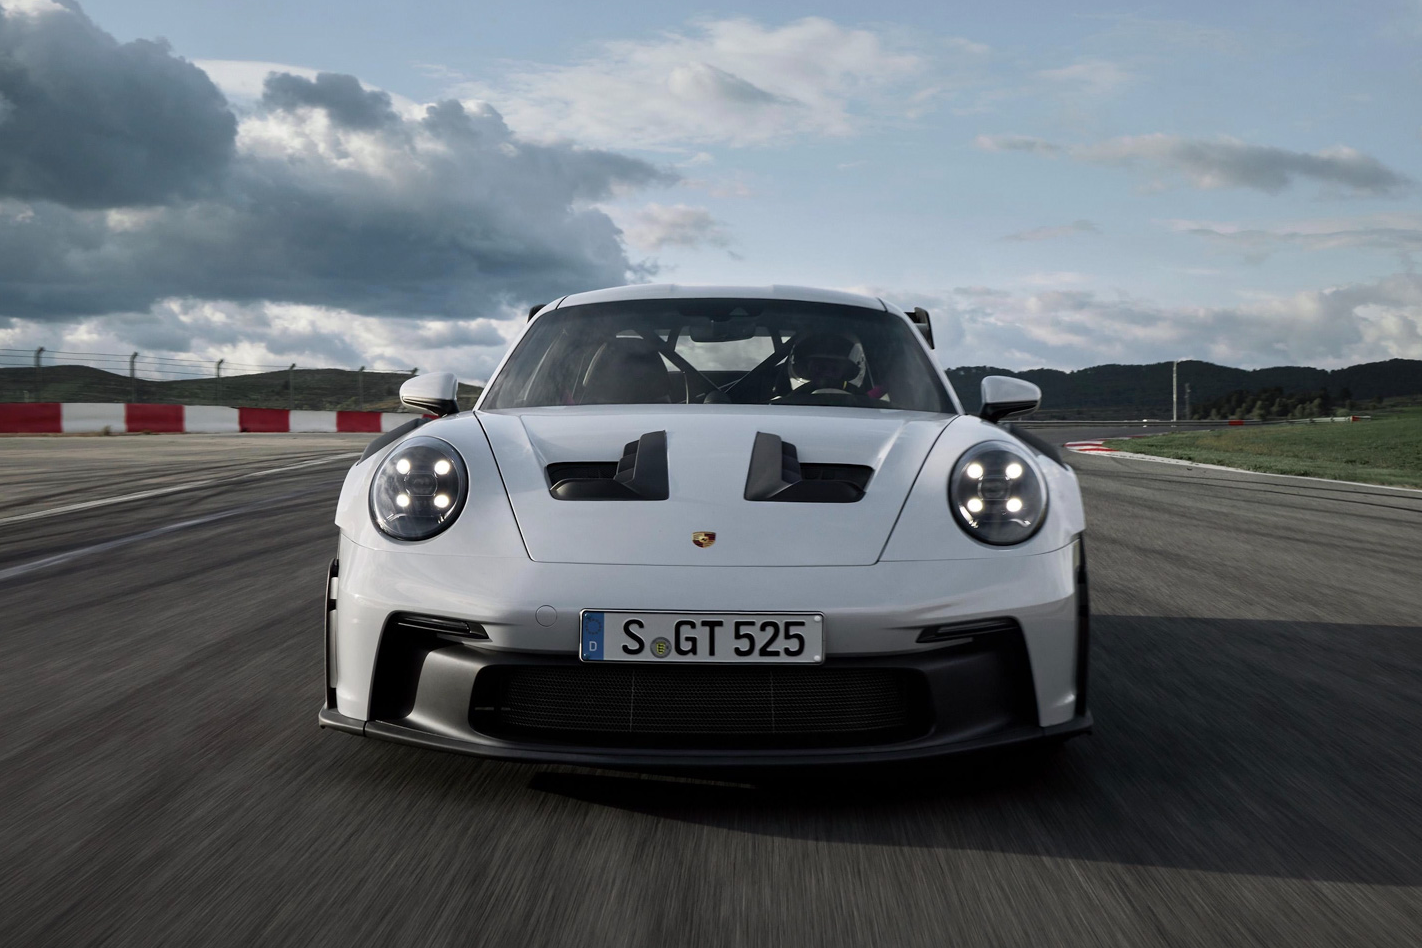 Chi tiết Porsche 911 GT3 RS thế hệ mới - ảnh 14